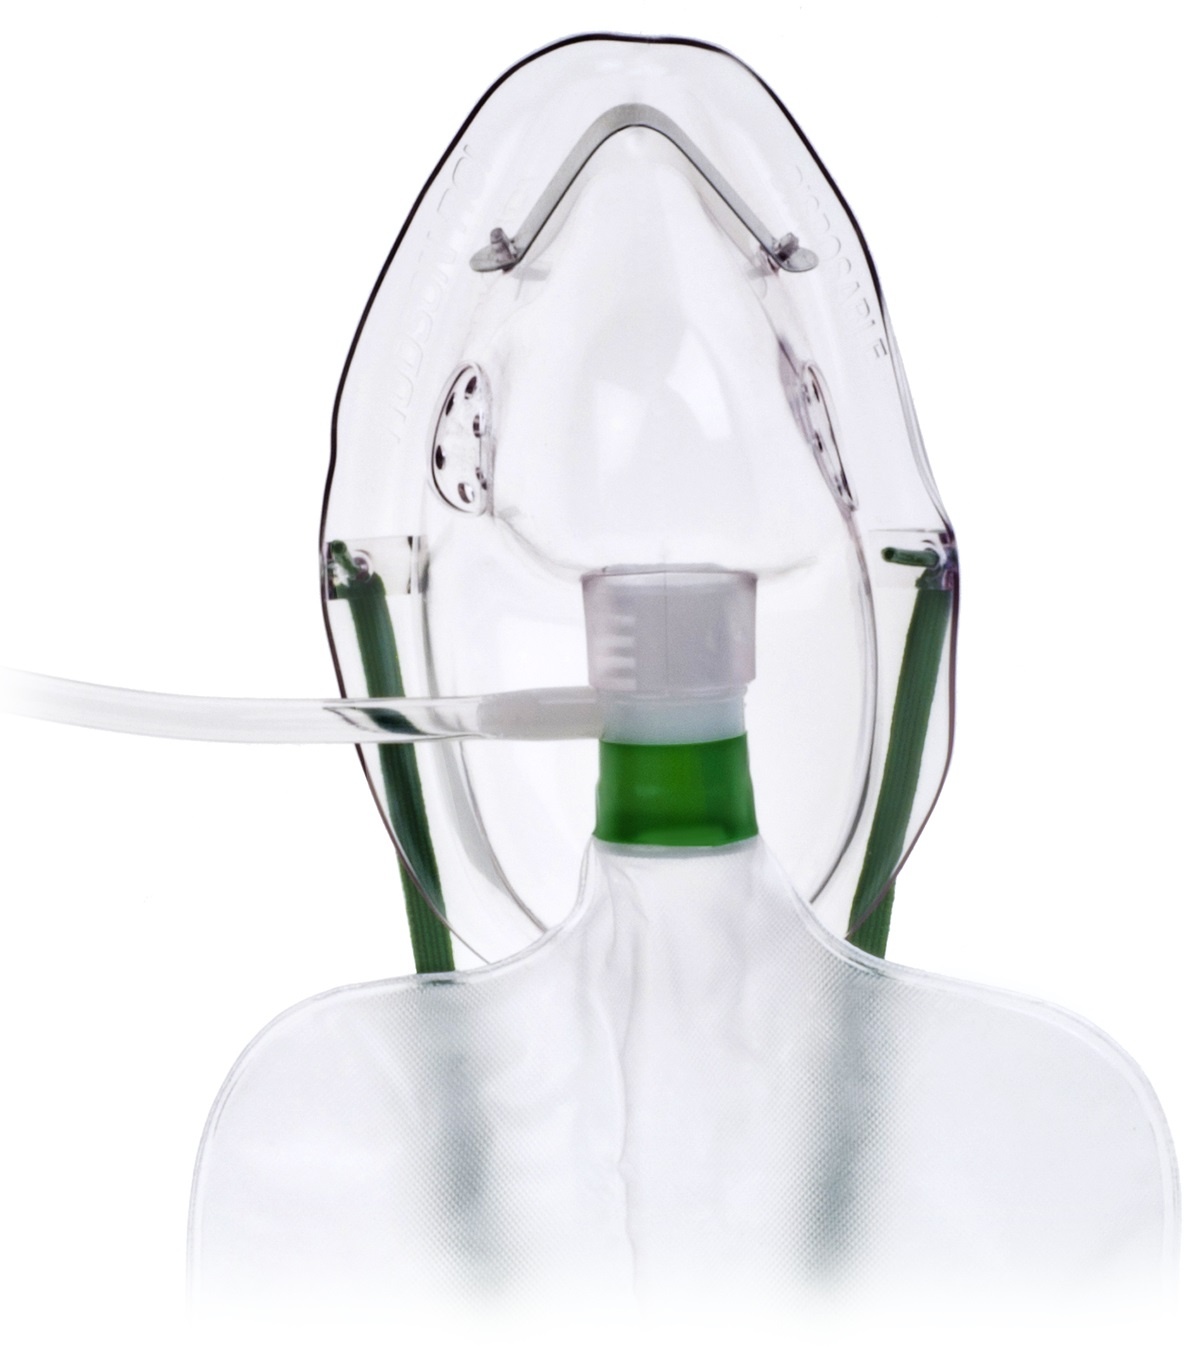 Hudson Mask High Concentration Elongated with 7ft Oxygen Tubing & Reservoir Bag - Adult